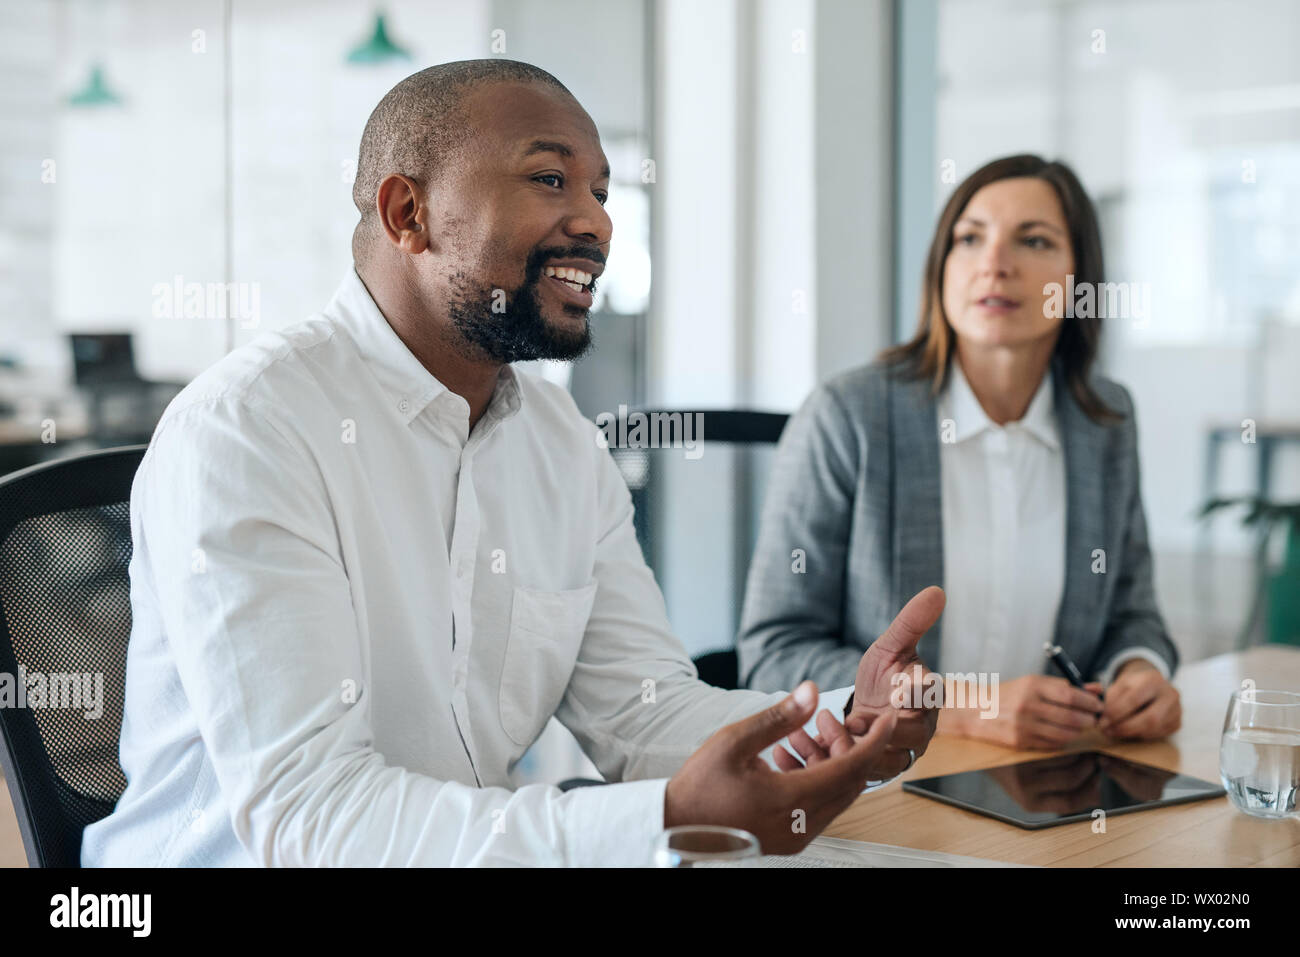 Lächelnd Afrikanische amerikanische Geschäftsmann im Gespräch mit Kollegen während einer Konferenz Stockfoto